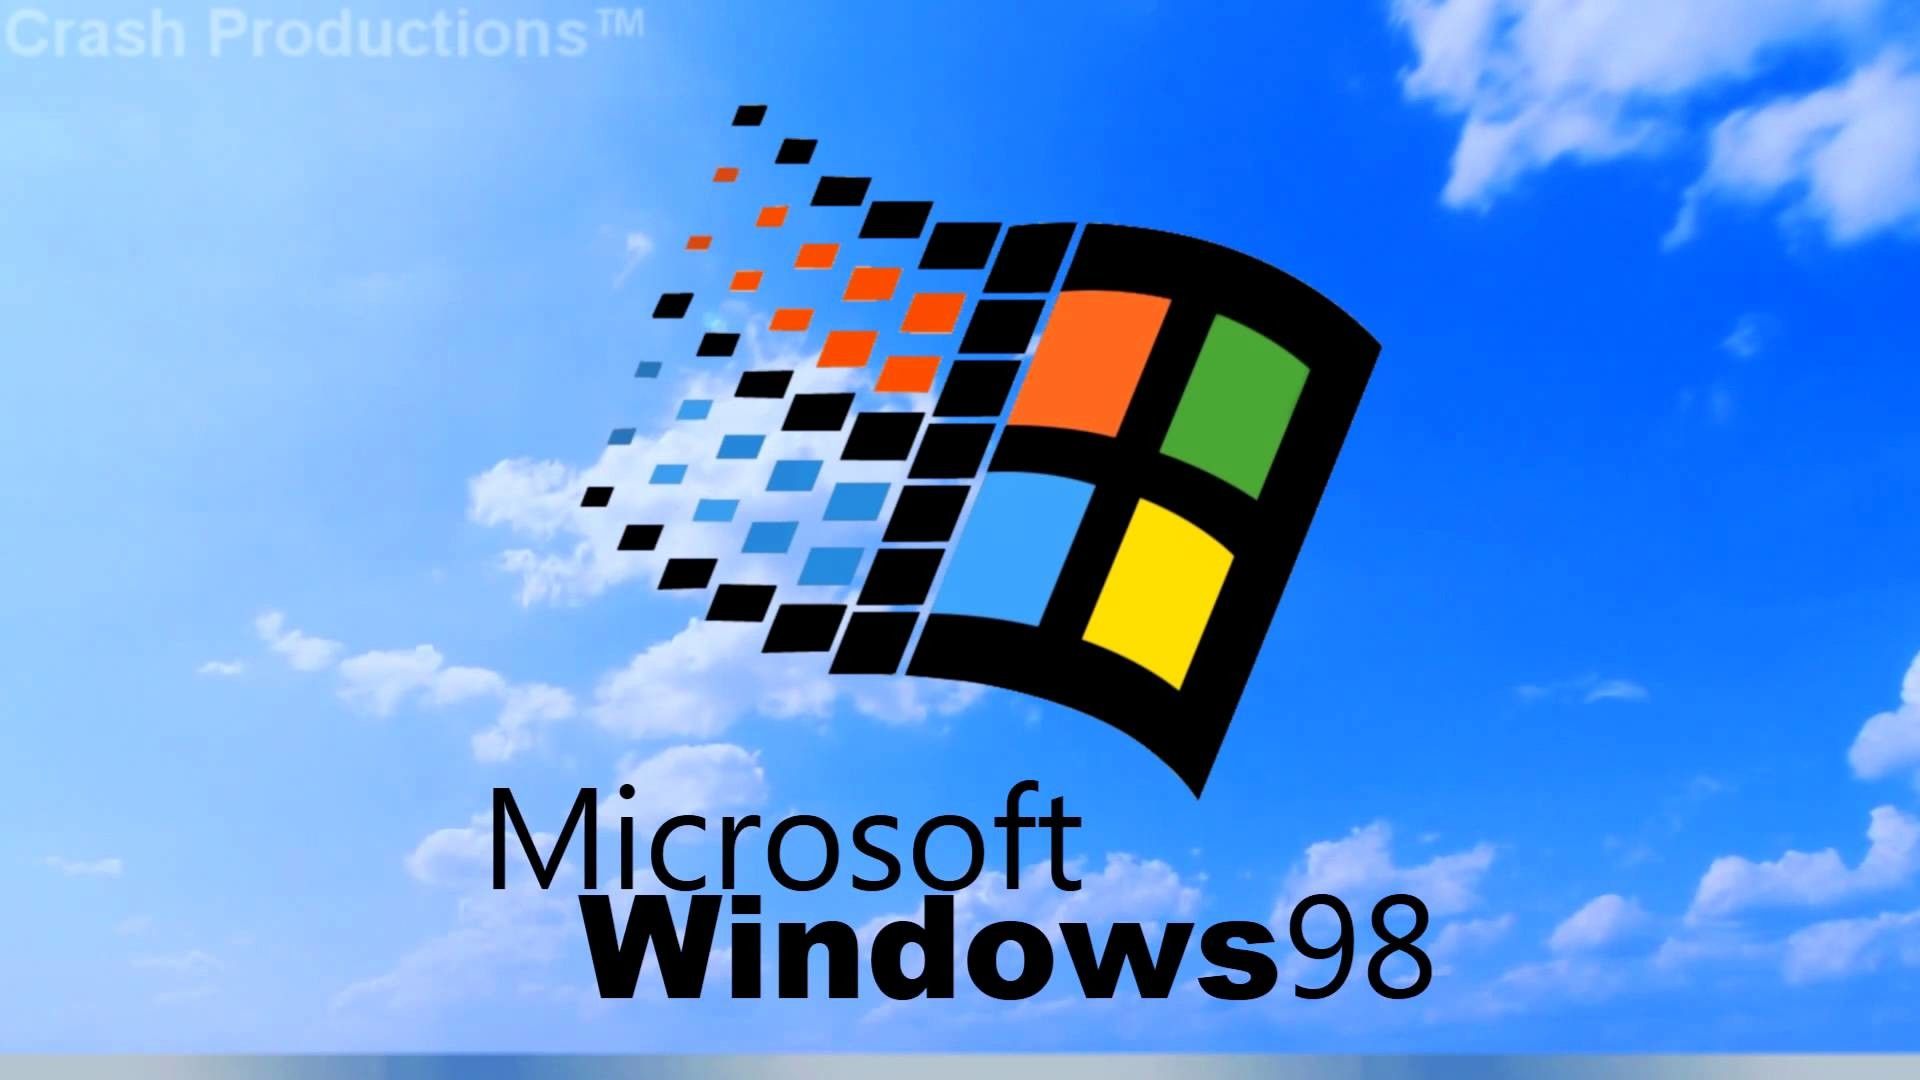 Hình nền Windows 98 độc đáo và sáng tạo trên WallpaperDog. Với nhiều kiểu dáng khác nhau, tất cả những hình nền này đều có điểm chung là được cập nhật thường xuyên và đầy sức sống. Hãy truy cập ngay để tìm kiếm một hình nền phù hợp với cá tính của bạn.